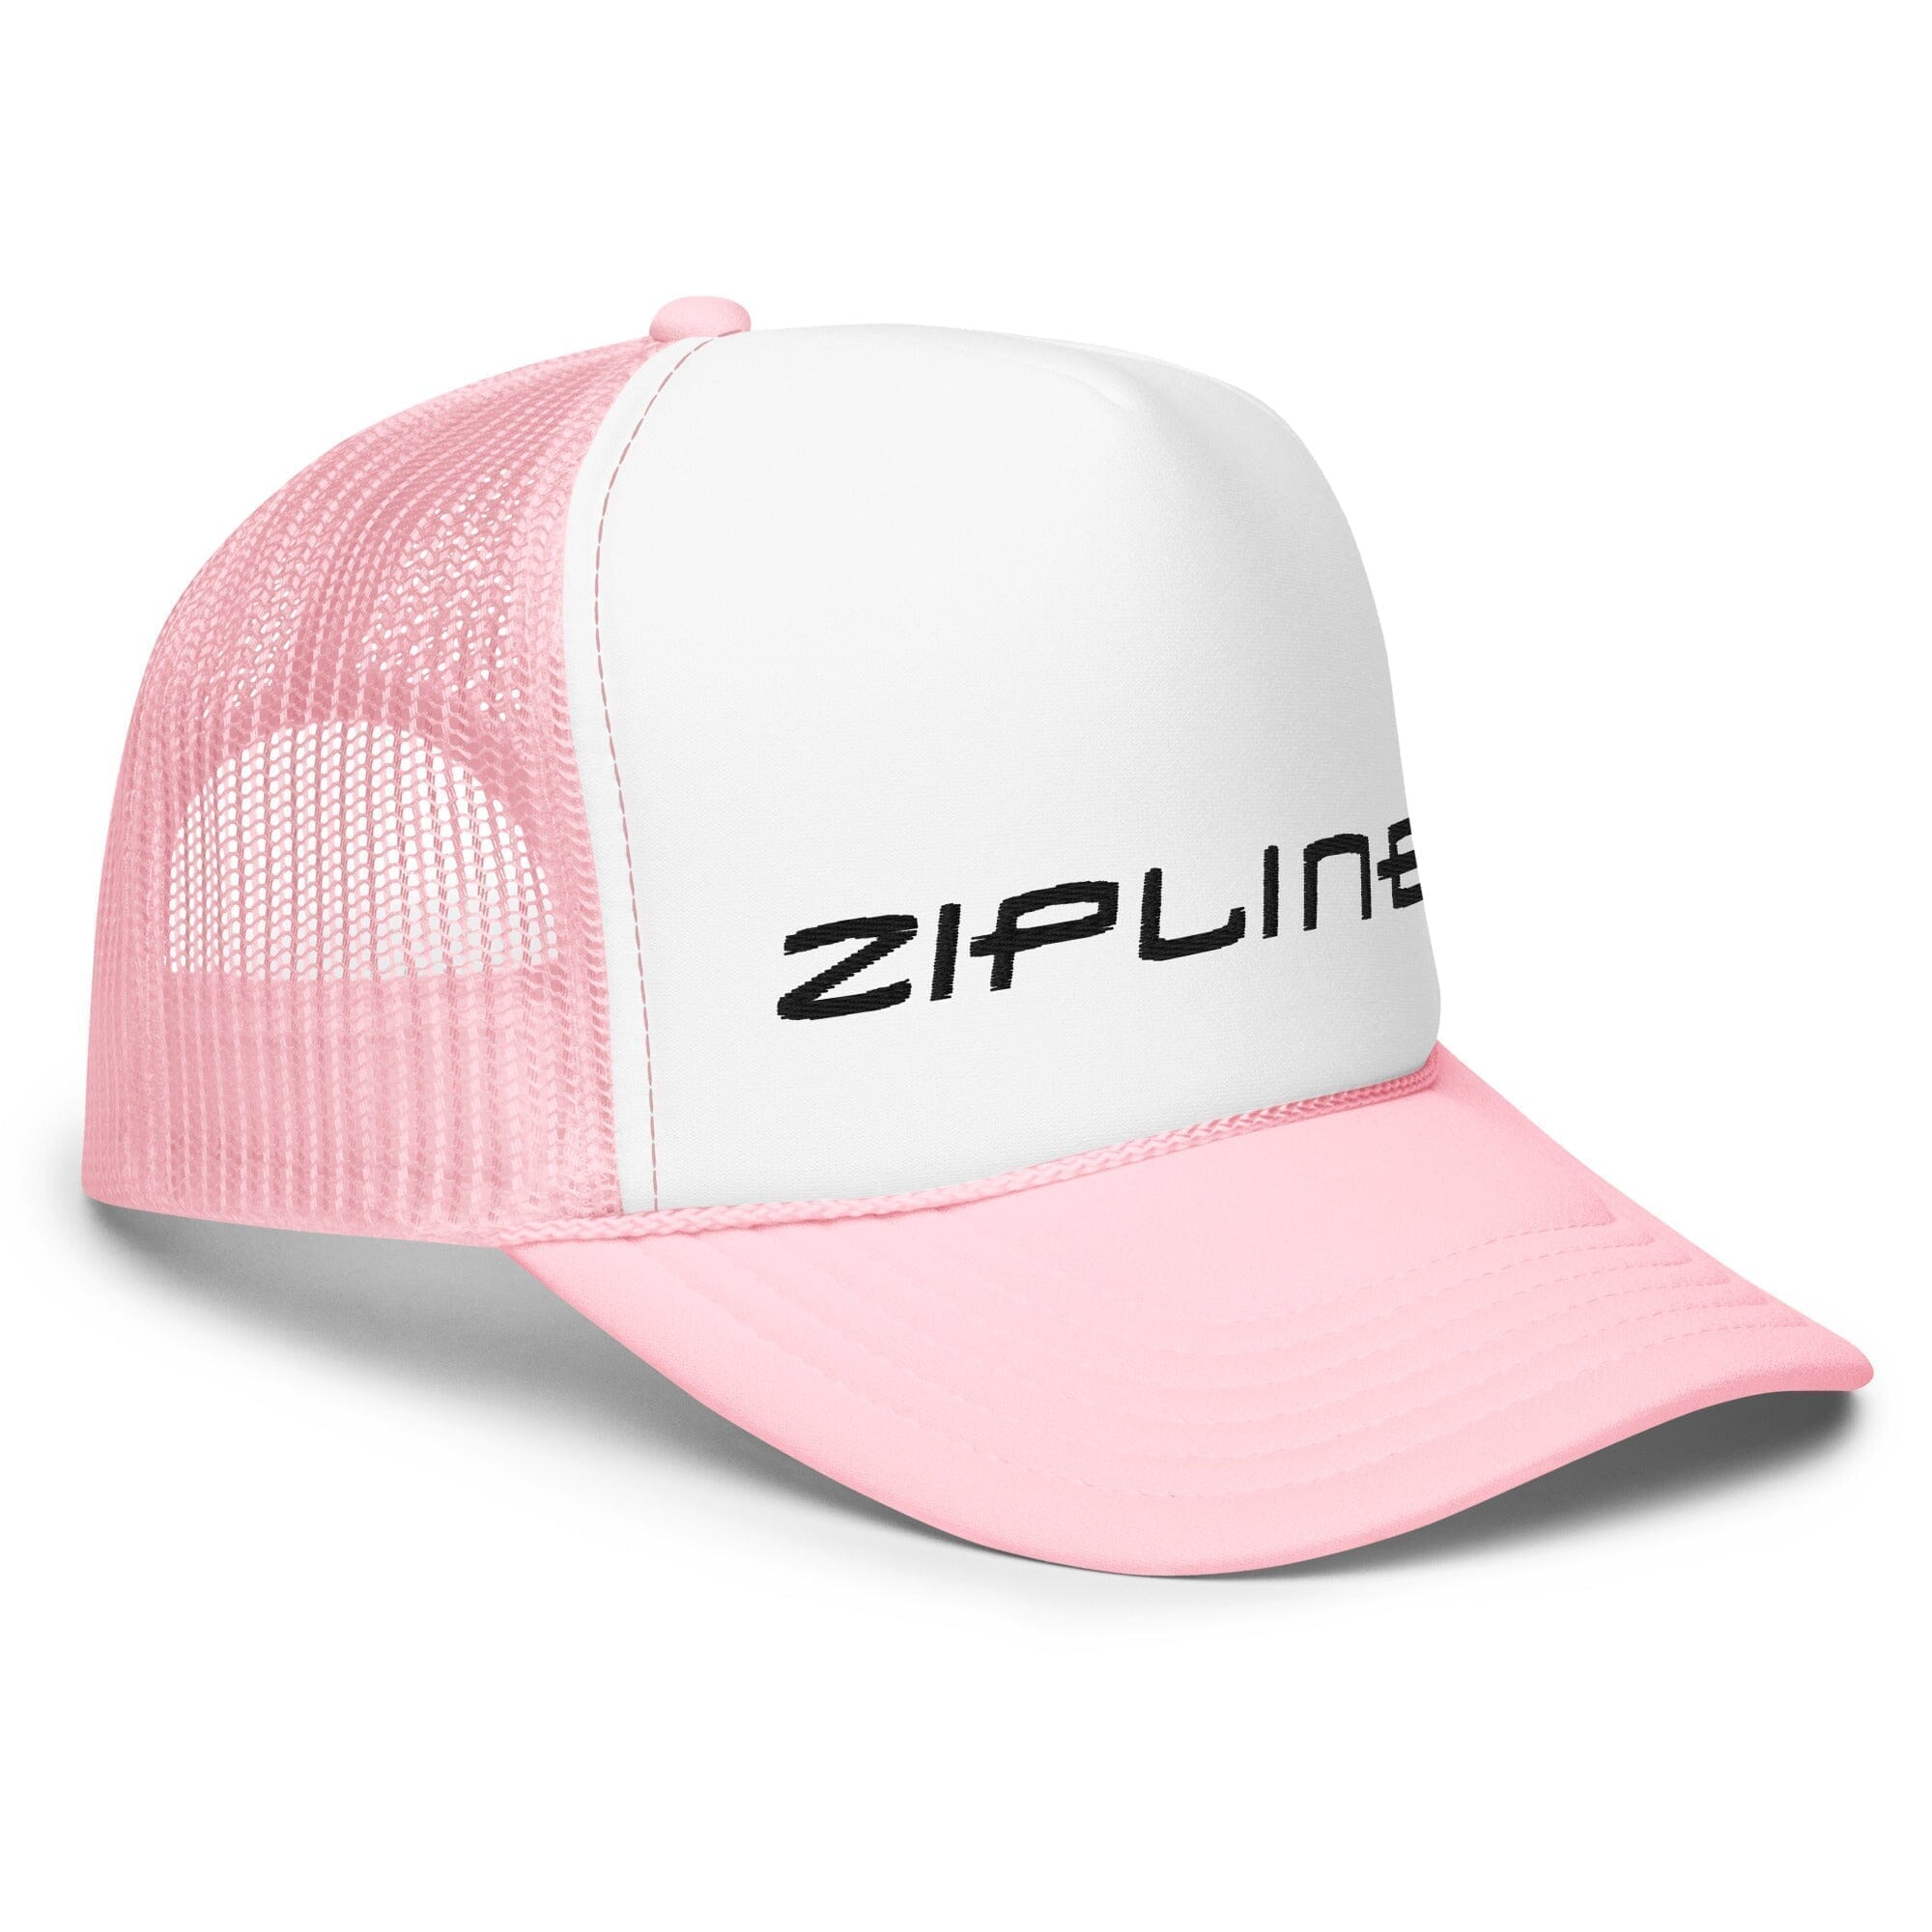 Zipline Foam trucker hat - ZiplineSki